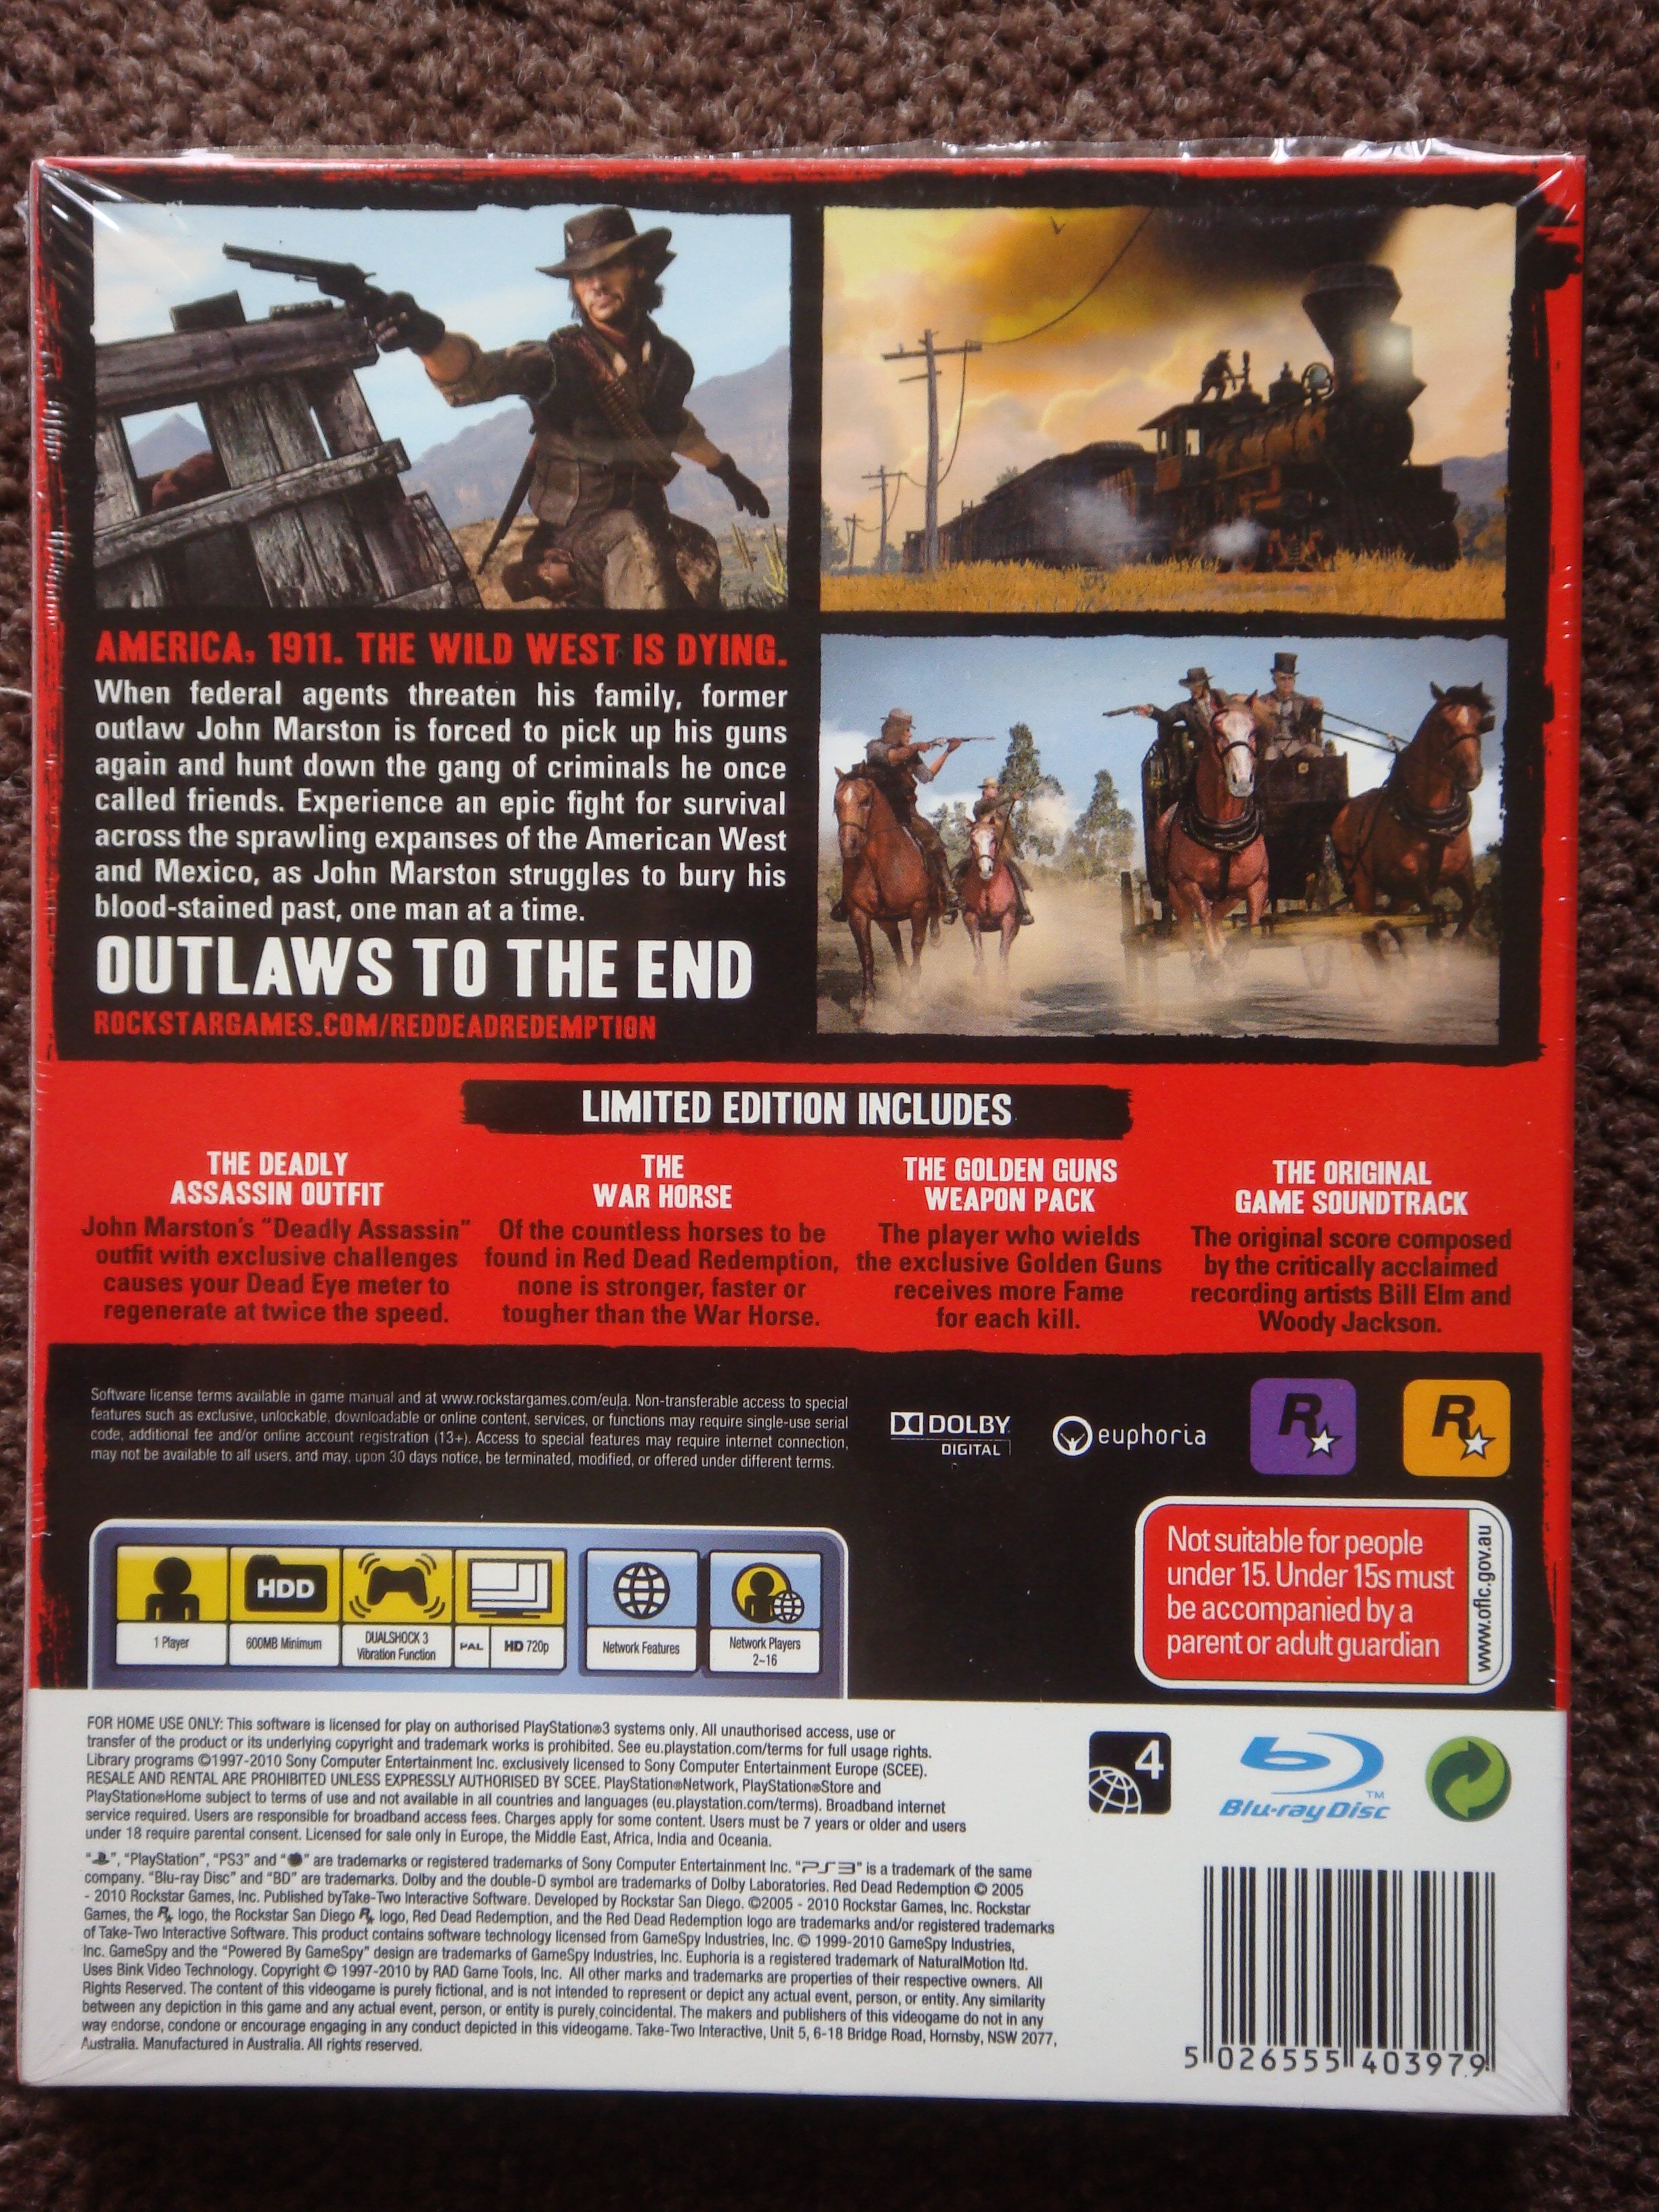 radar Rationalisering ingeniør Red Dead Redemption Limited Edition Unboxing | Saint-ism – Gaming, Gunpla,  Digital Art